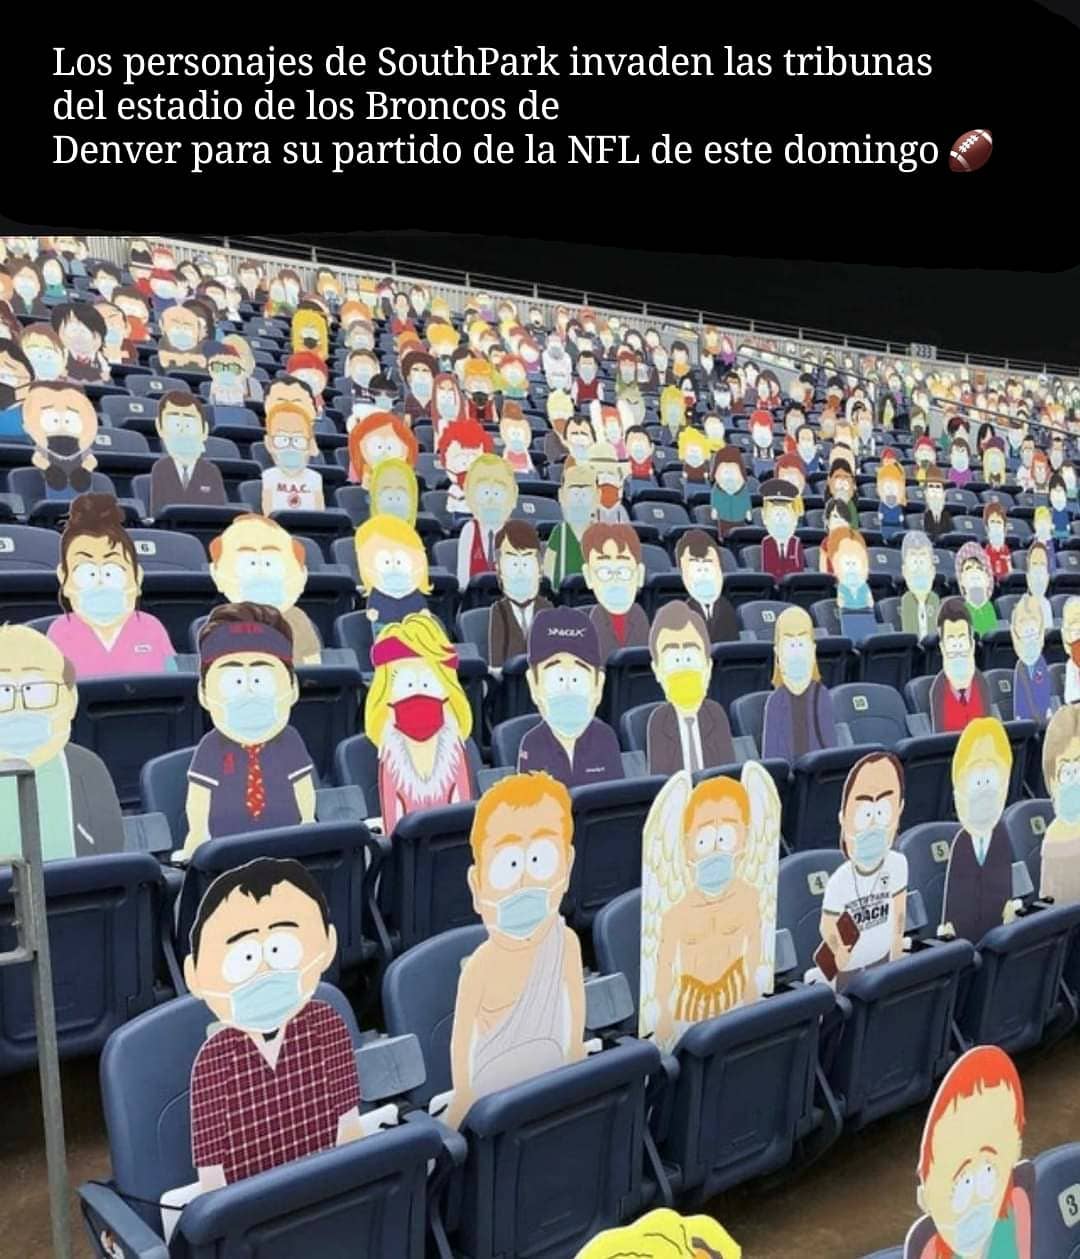 Los personajes de SouthPark invaden las tribunas del estadio de los Broncos de Denver para su partido de la NFL de este domingo.